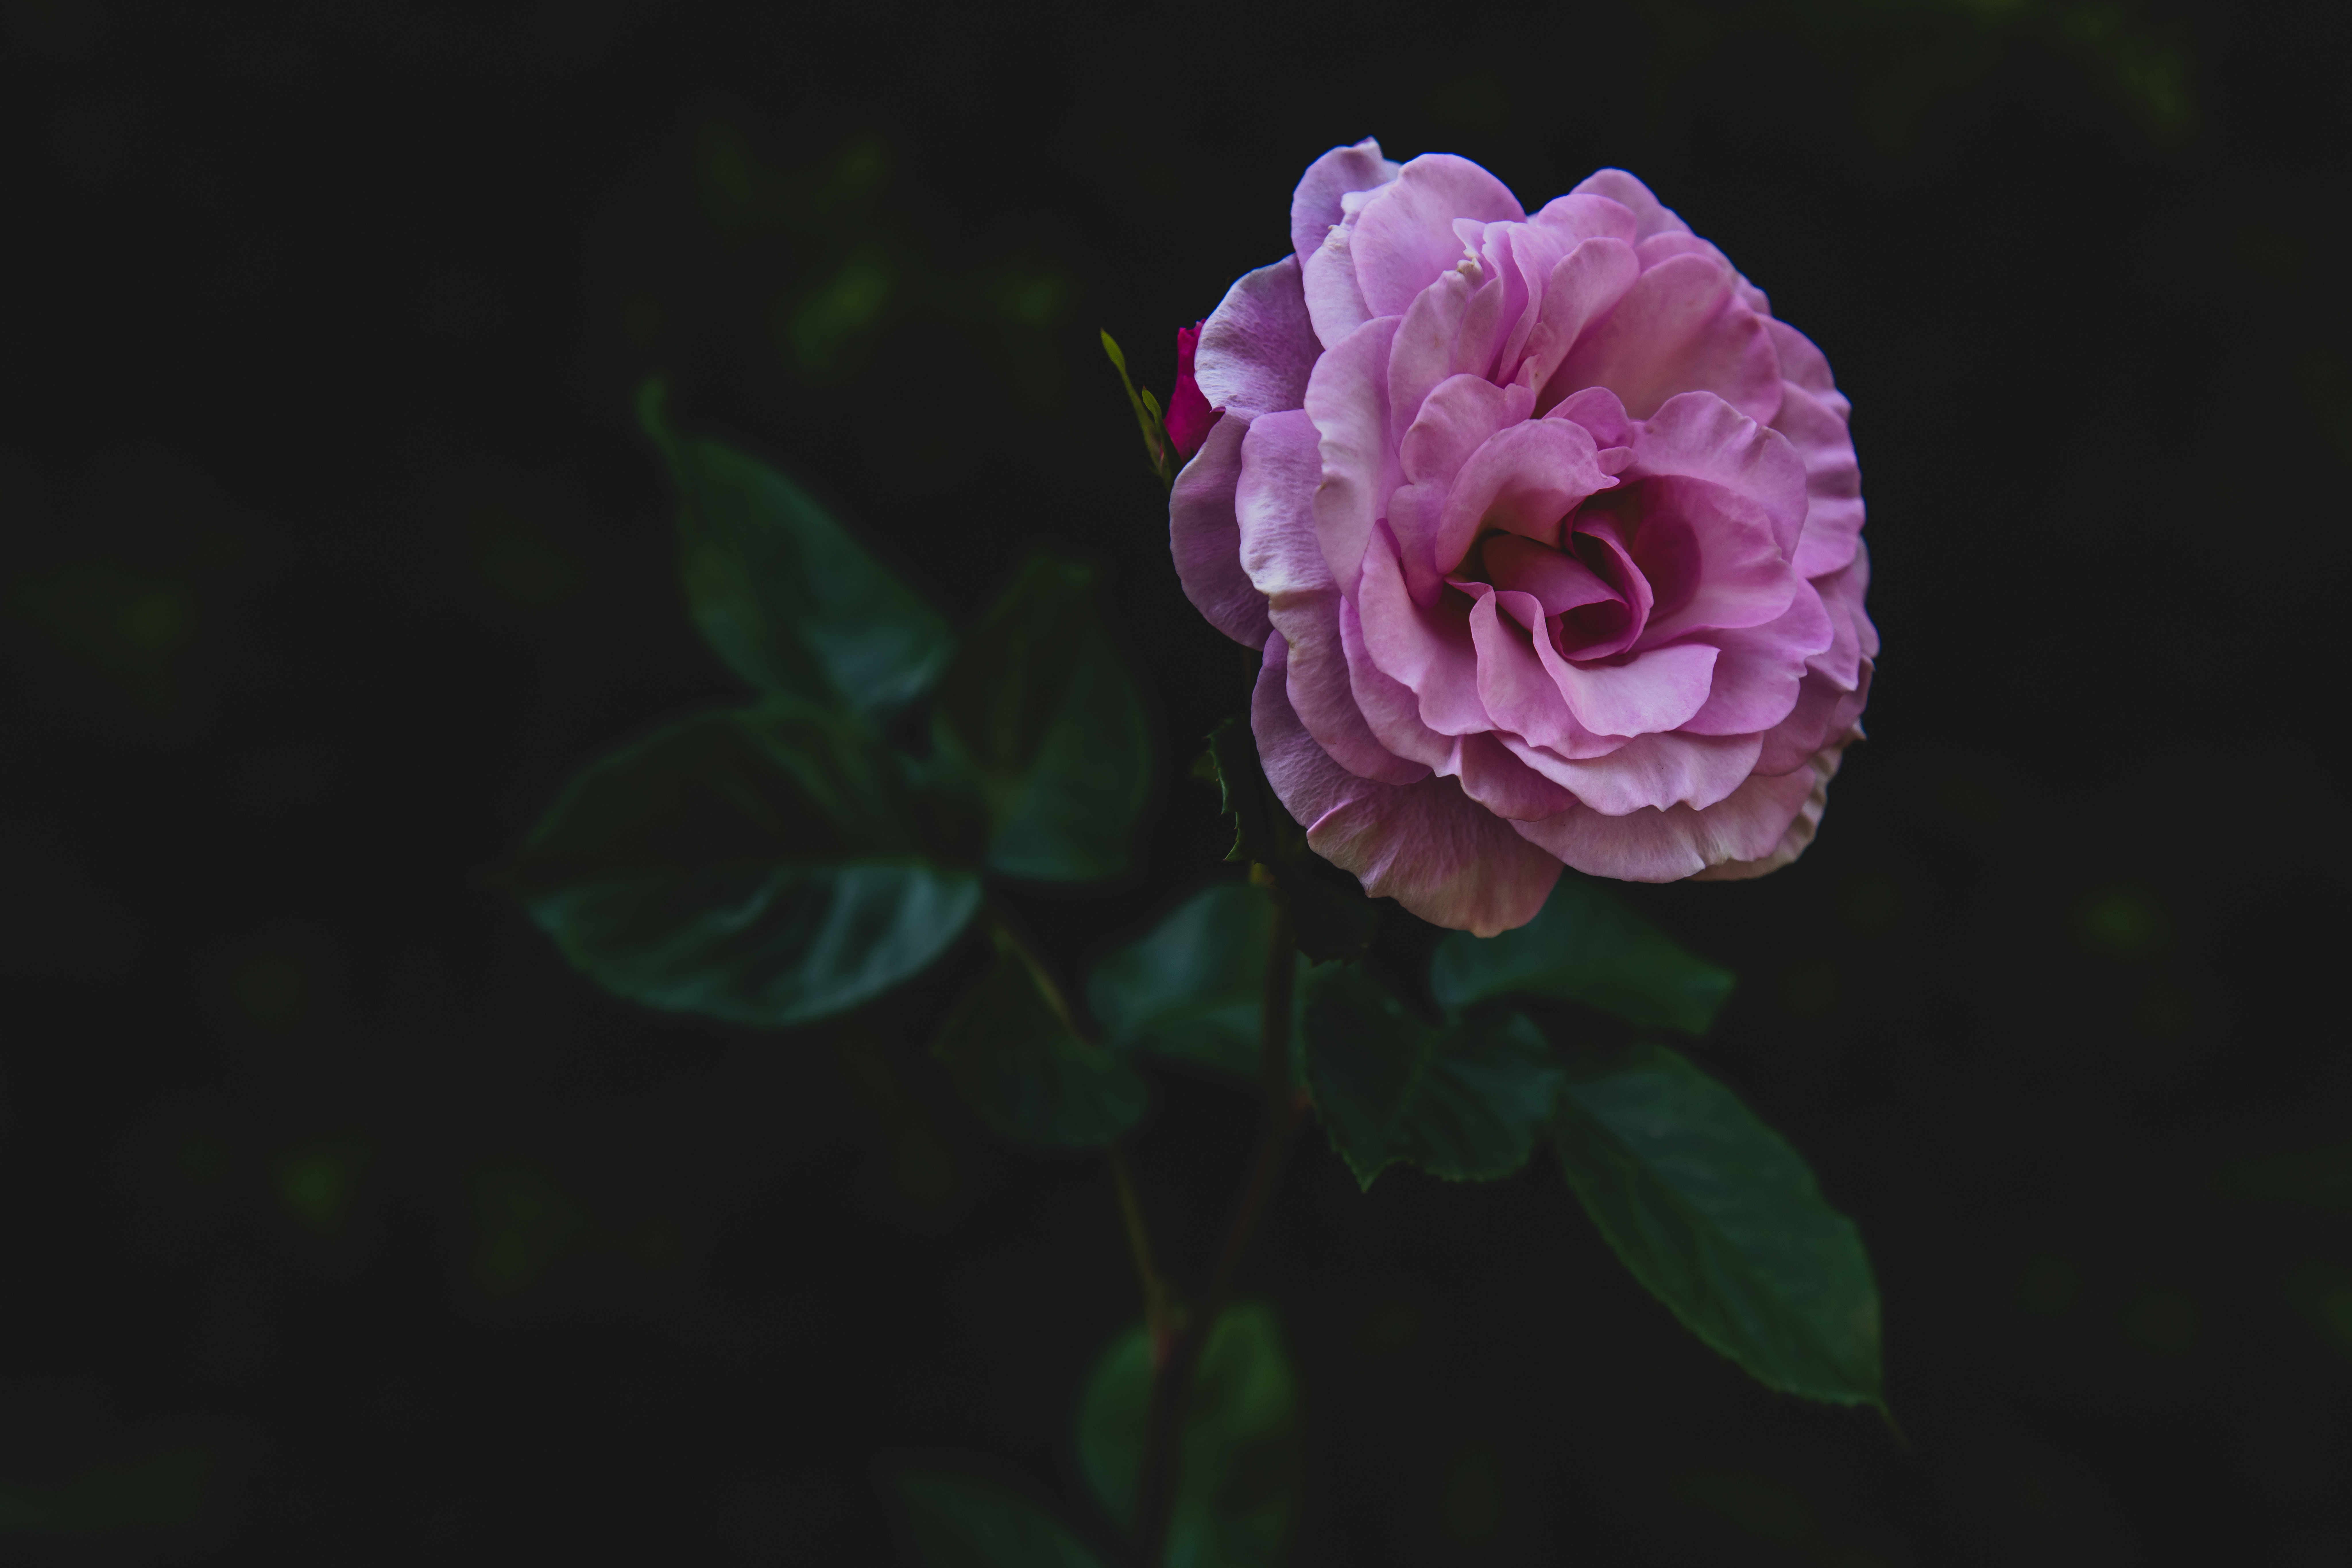 bud, flowers, pink, rose flower, rose, petals, stem, stalk cellphone